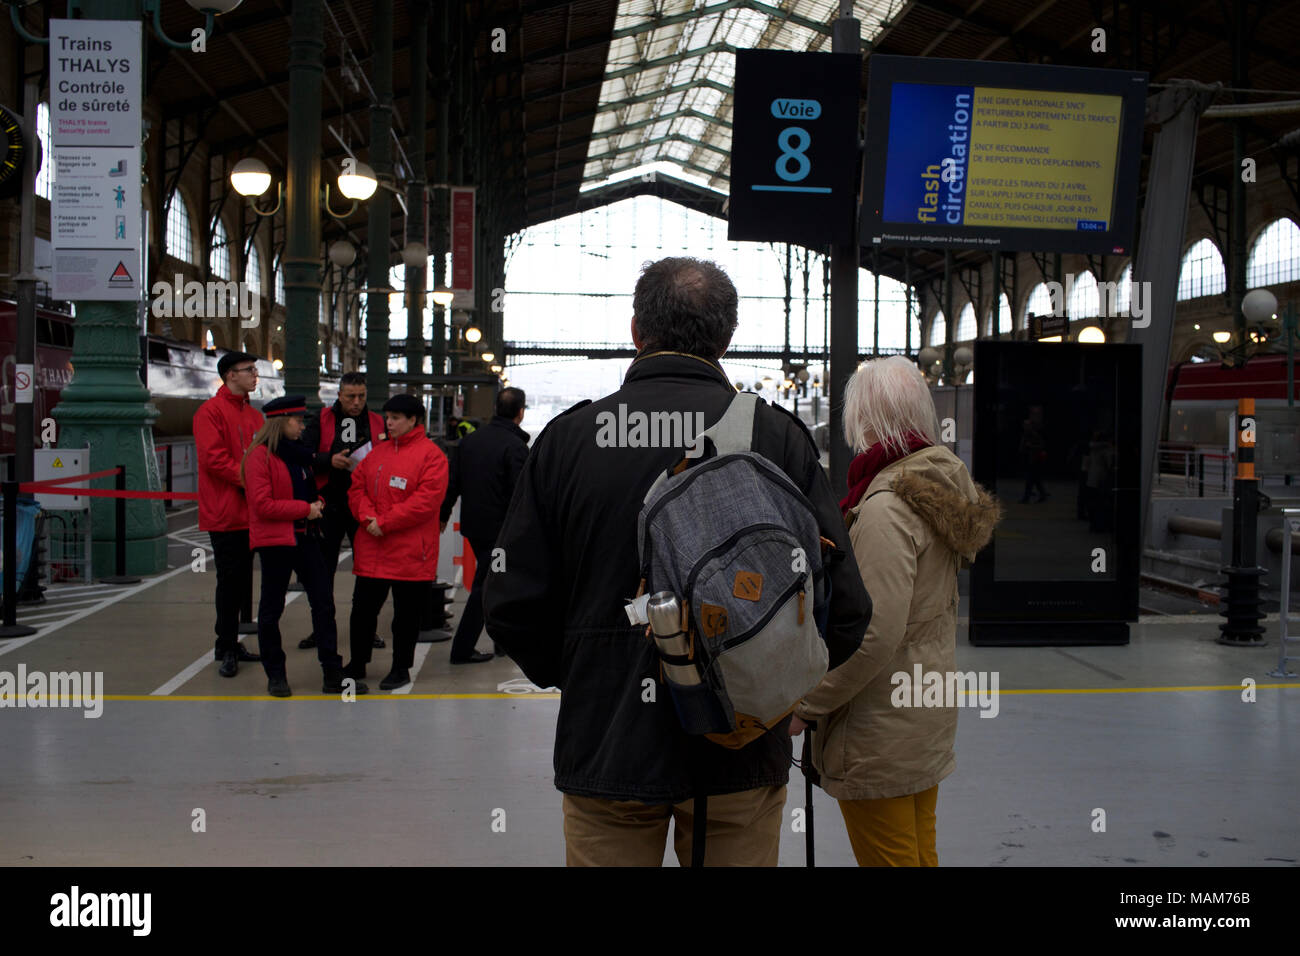 Par esperar para obtener información acerca de su viaje después de trenes son cancelados debido a la huelga de trenes Gare du Nord, Paris, Francia Foto de stock